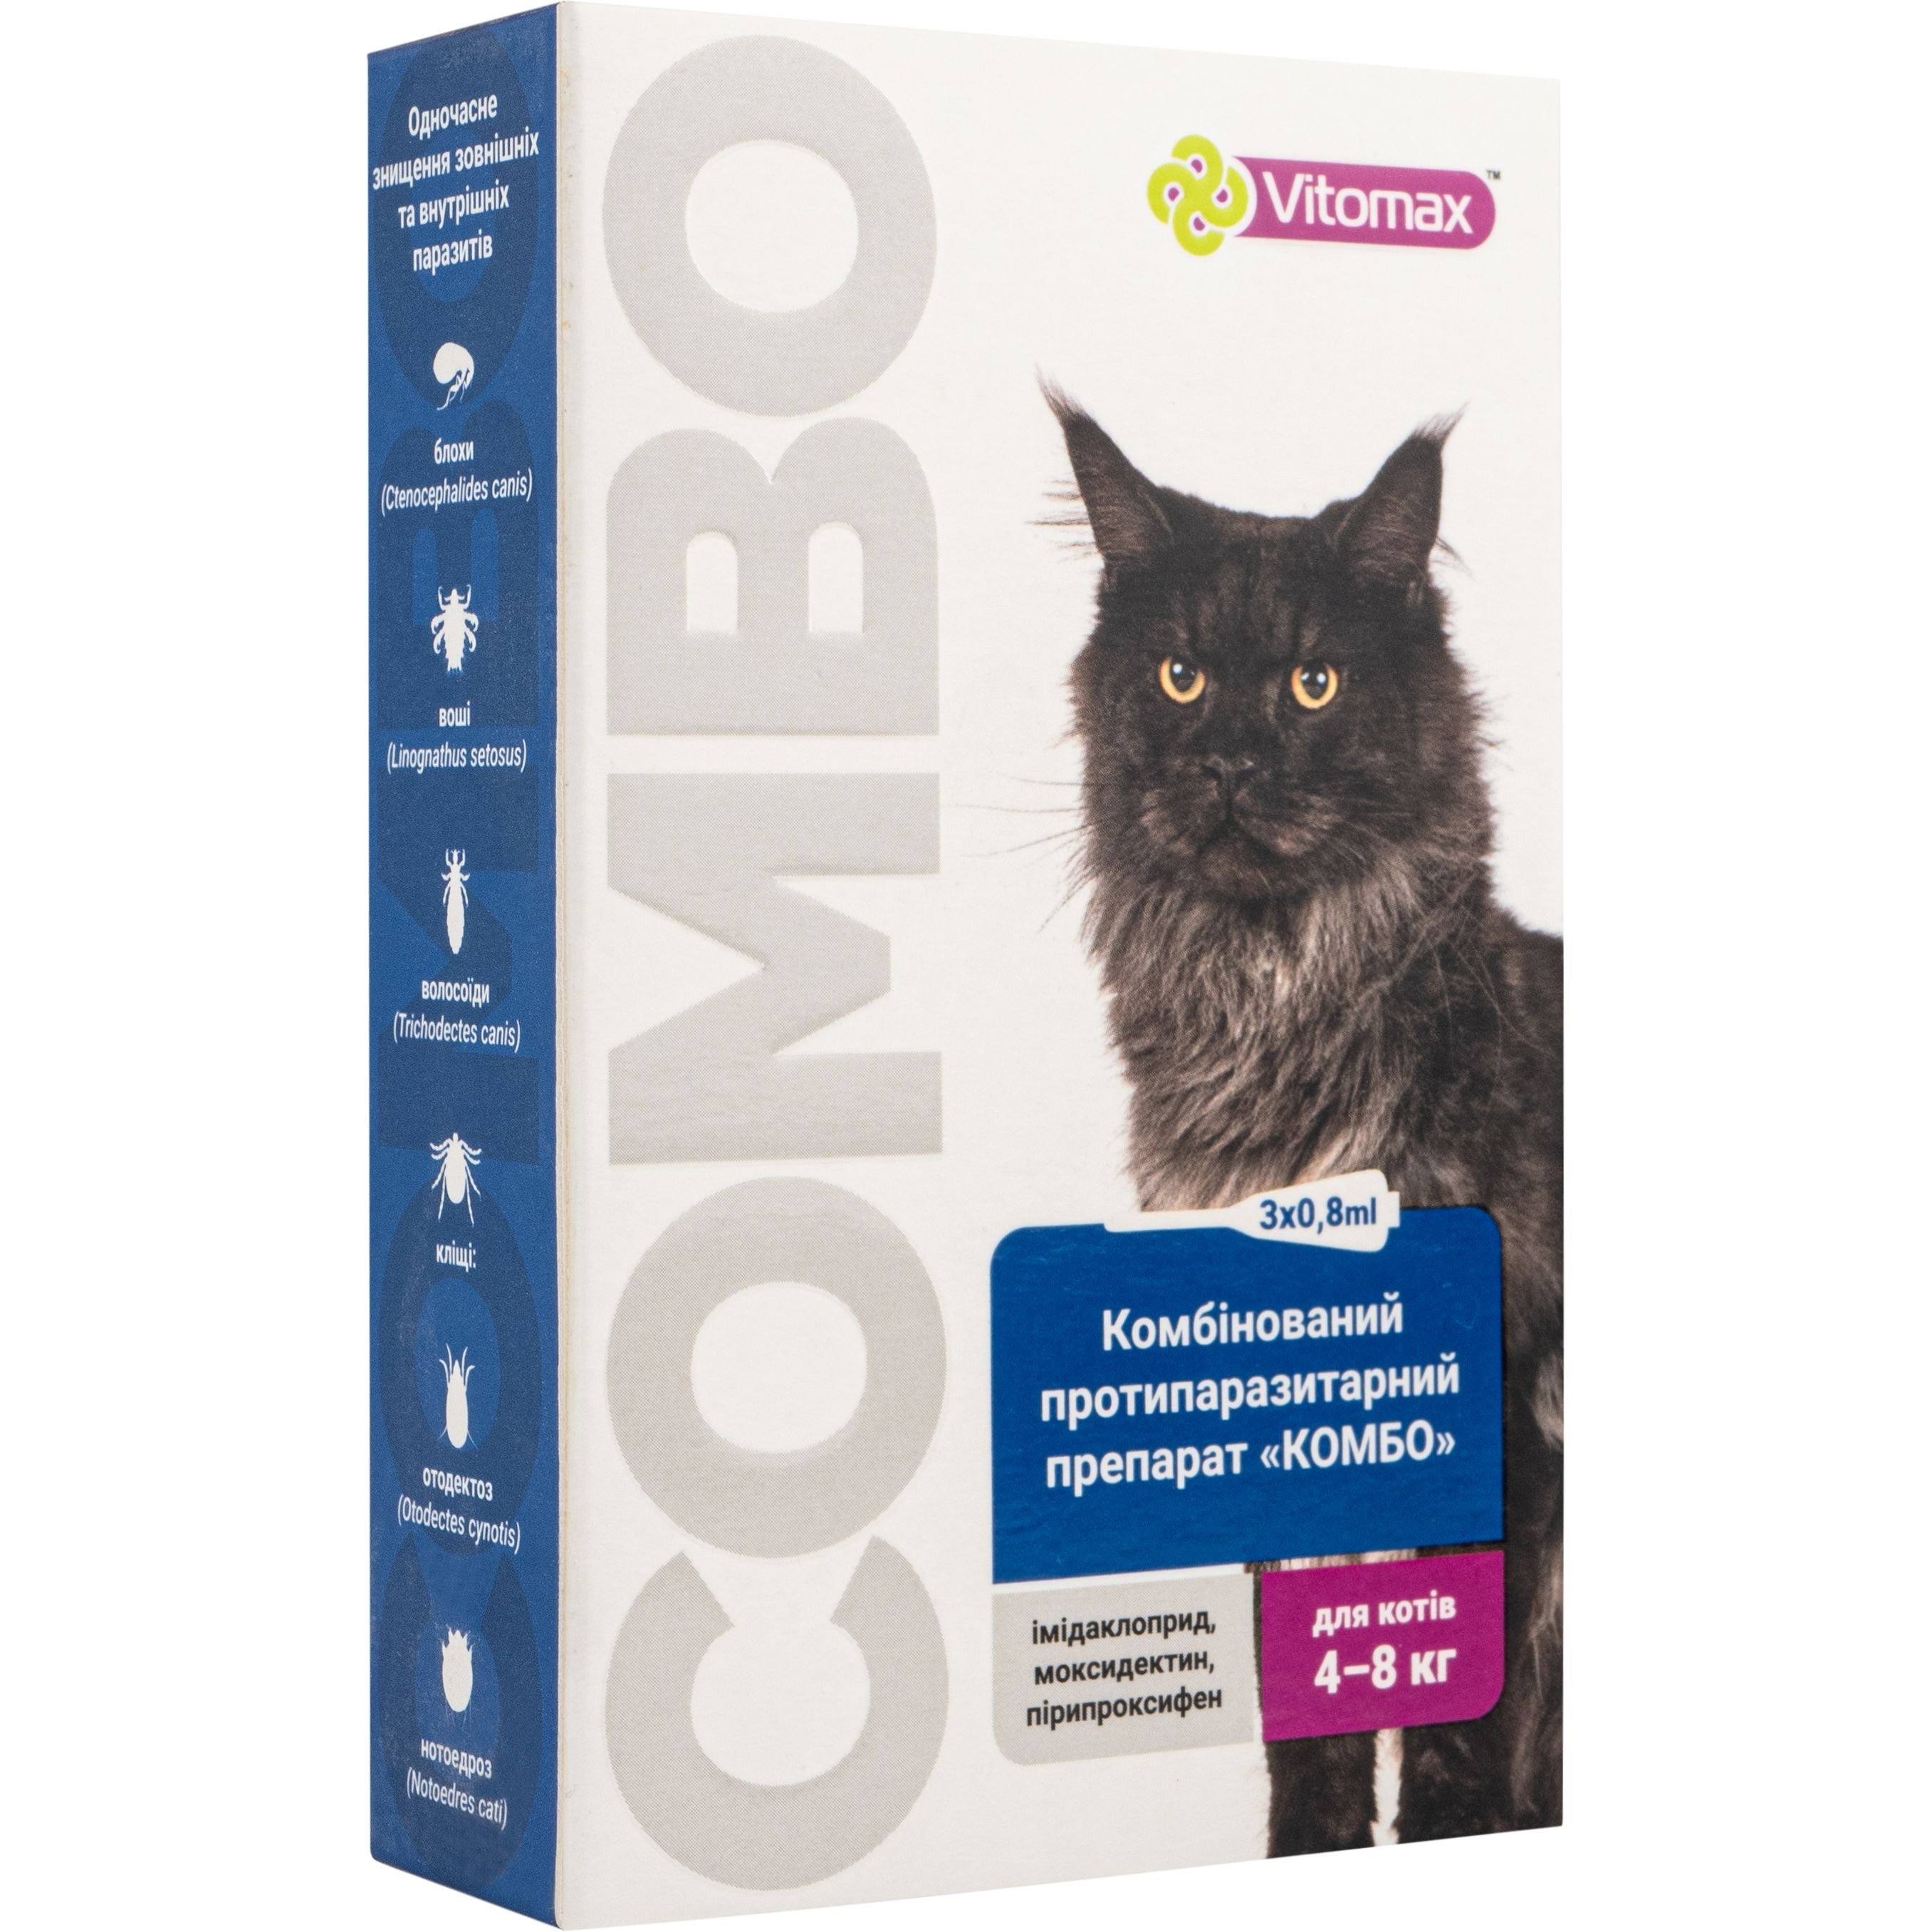 Краплі Vitomax комбо для котів 4 - 8 кг, 0.8 мл, 3 шт. - фото 1